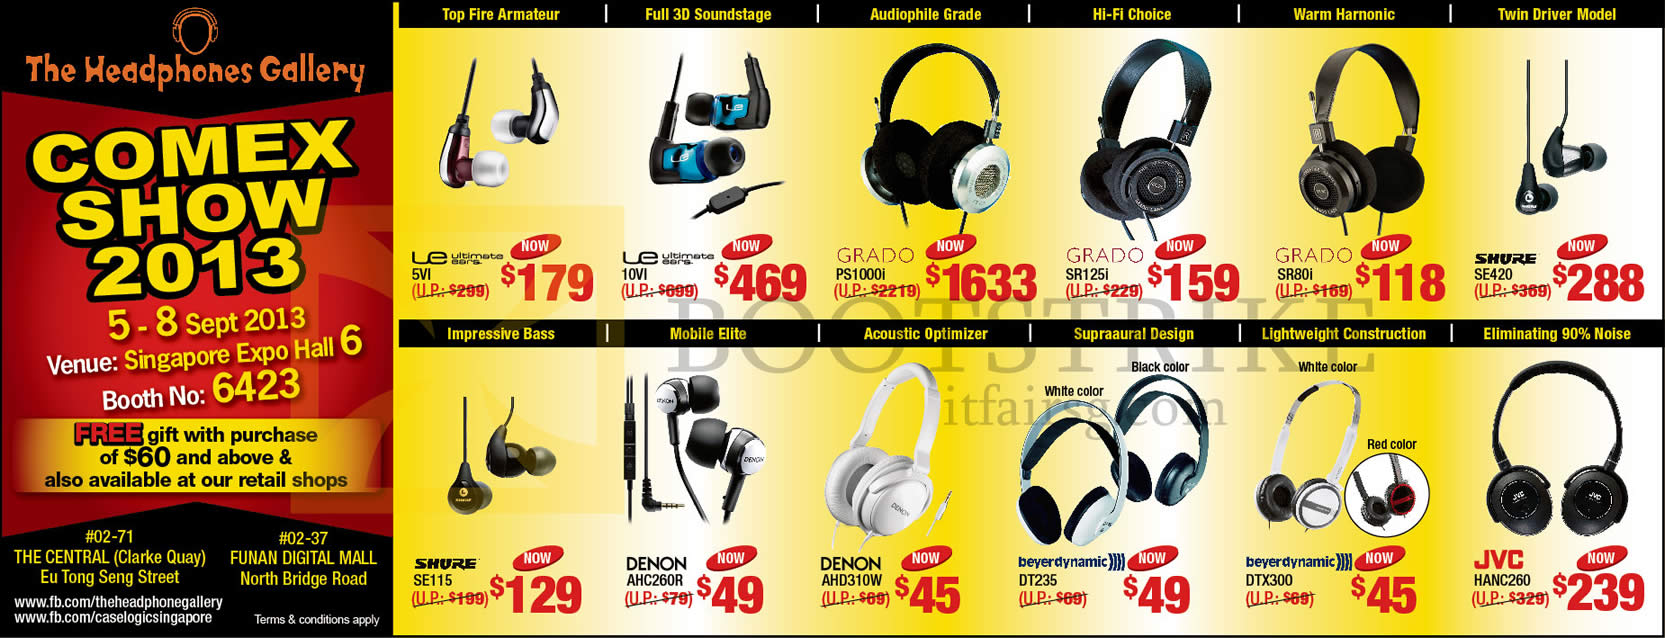 COMEX 2013 price list image brochure of The Headphones Gallery Headphones Earphones Ultimate Ears 5vi, 10vi, Grado PS1000i, SR125i, SR80i, Shure SE420, SE115, JVC HANC260, Denon, Beyer Dynamic